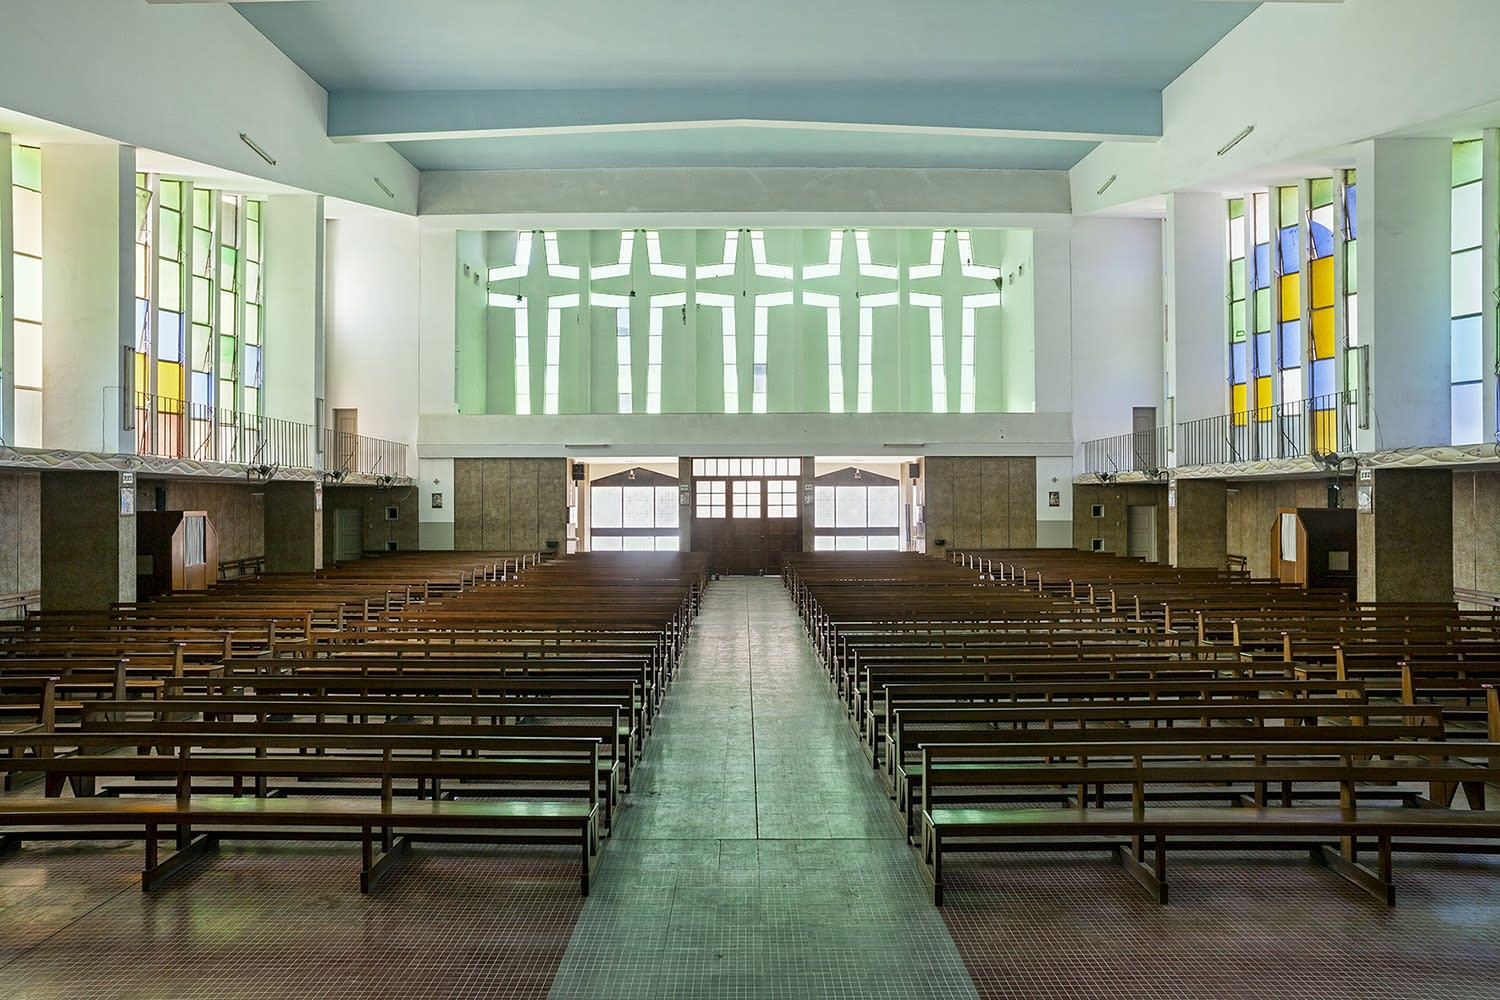 Filipe Branquinho, Nossa senhora das vitorias church, 2015